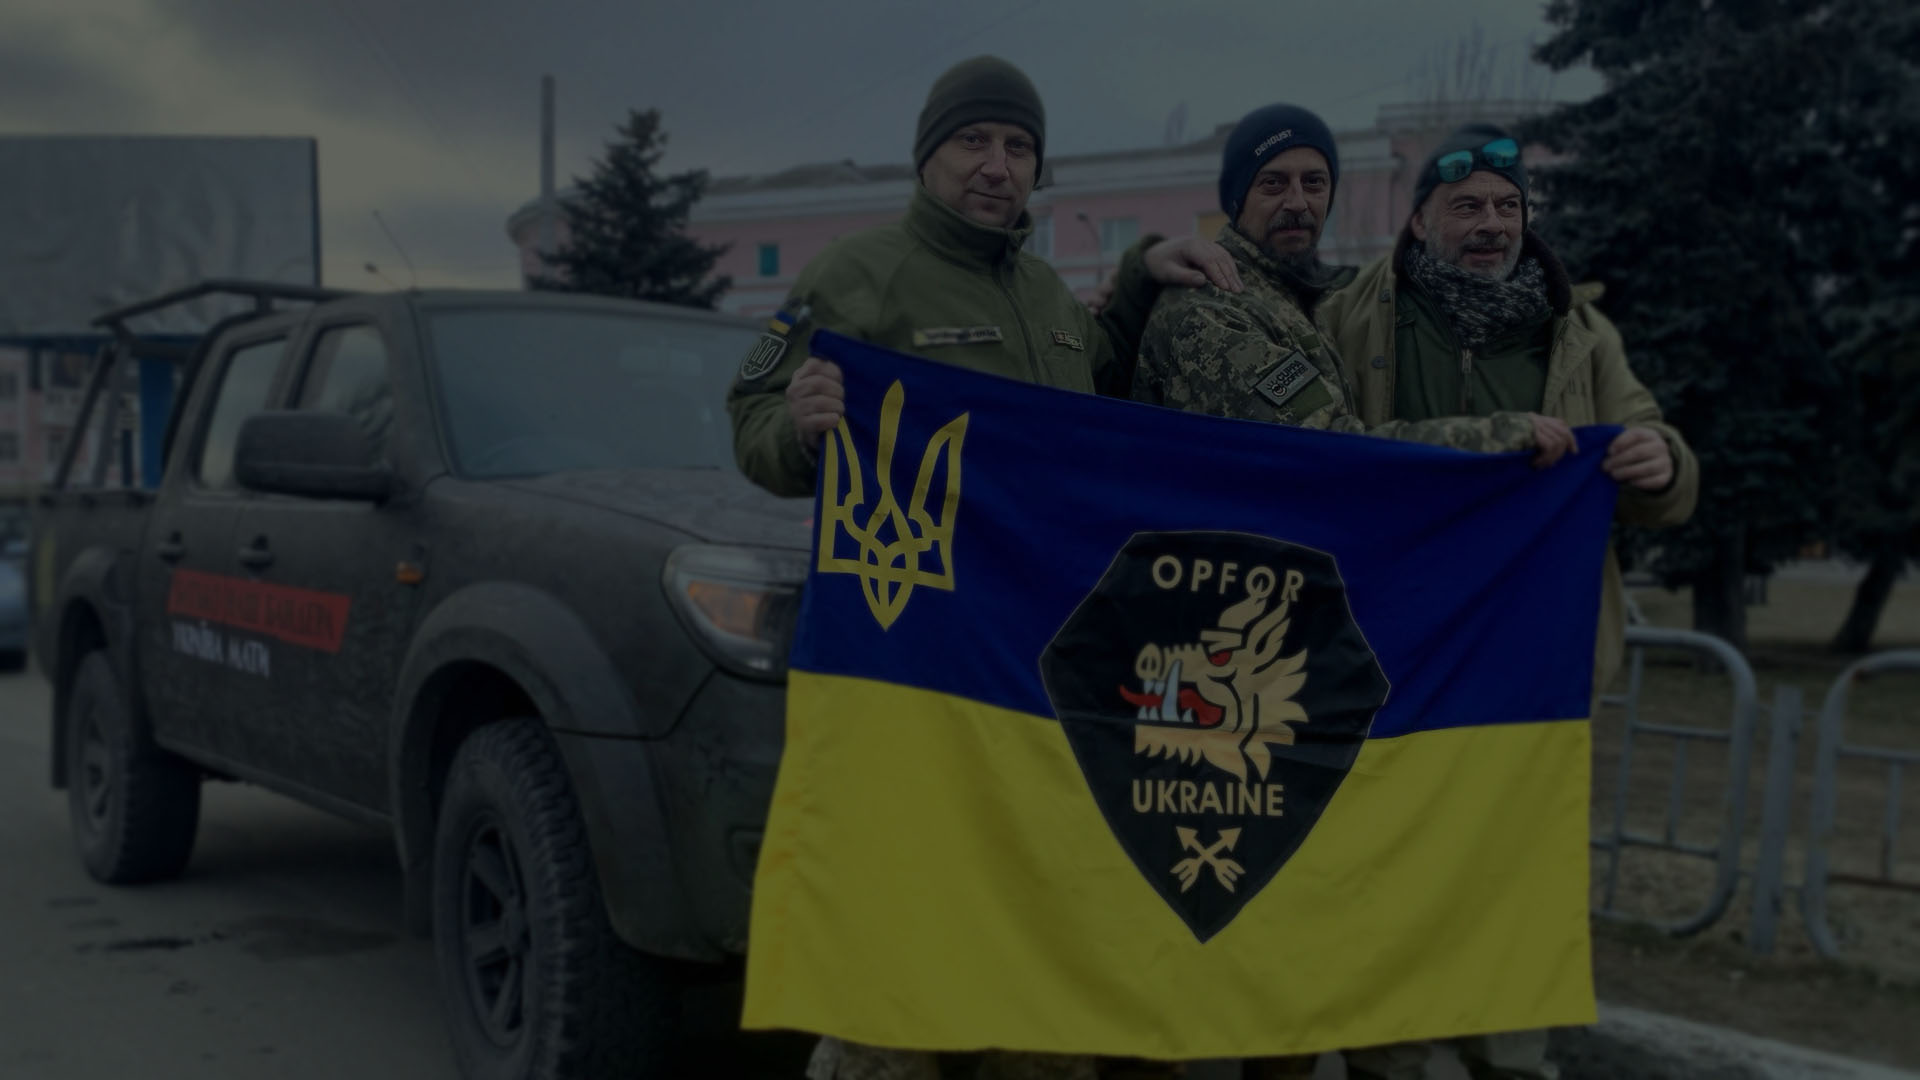 Dos soldados de UA de OPFOR y Adam sostienen la bandera ucraniana frente al camión pickup militarizado.